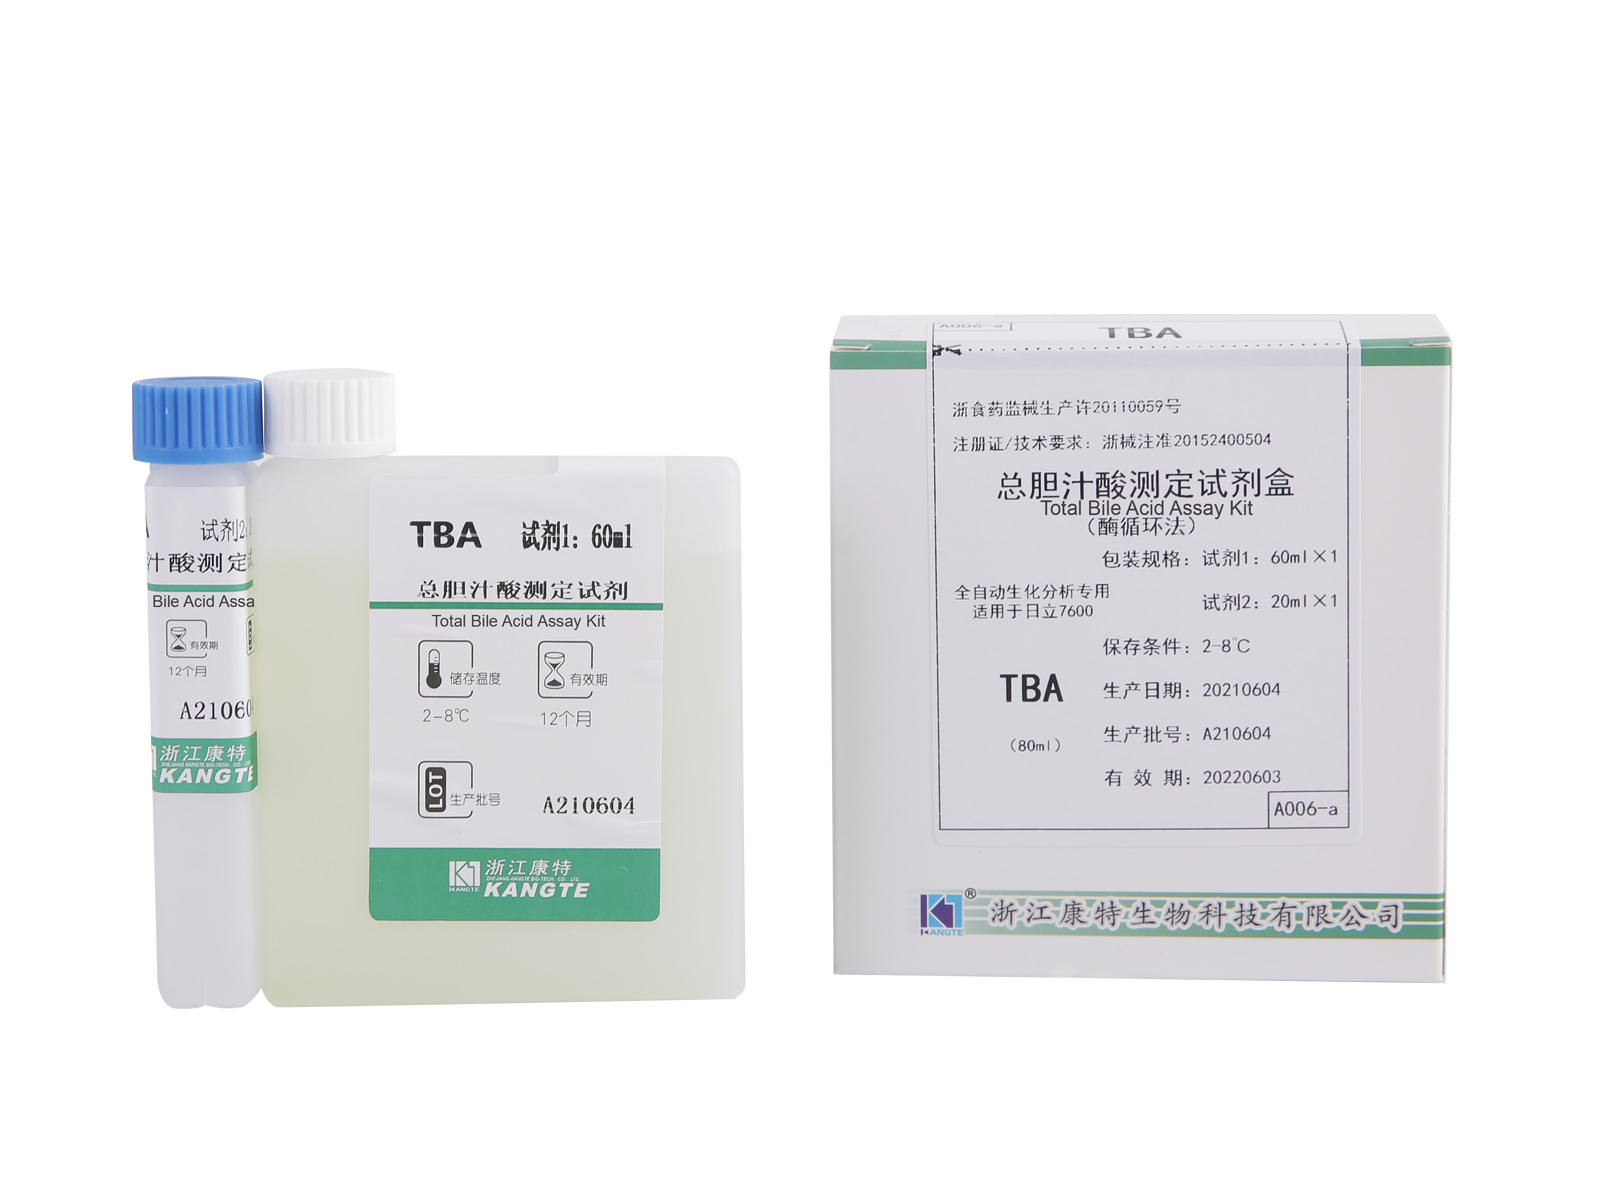 【TBA】 Kit de dosage des acides biliaires totaux (méthode de cycle enzymatique)